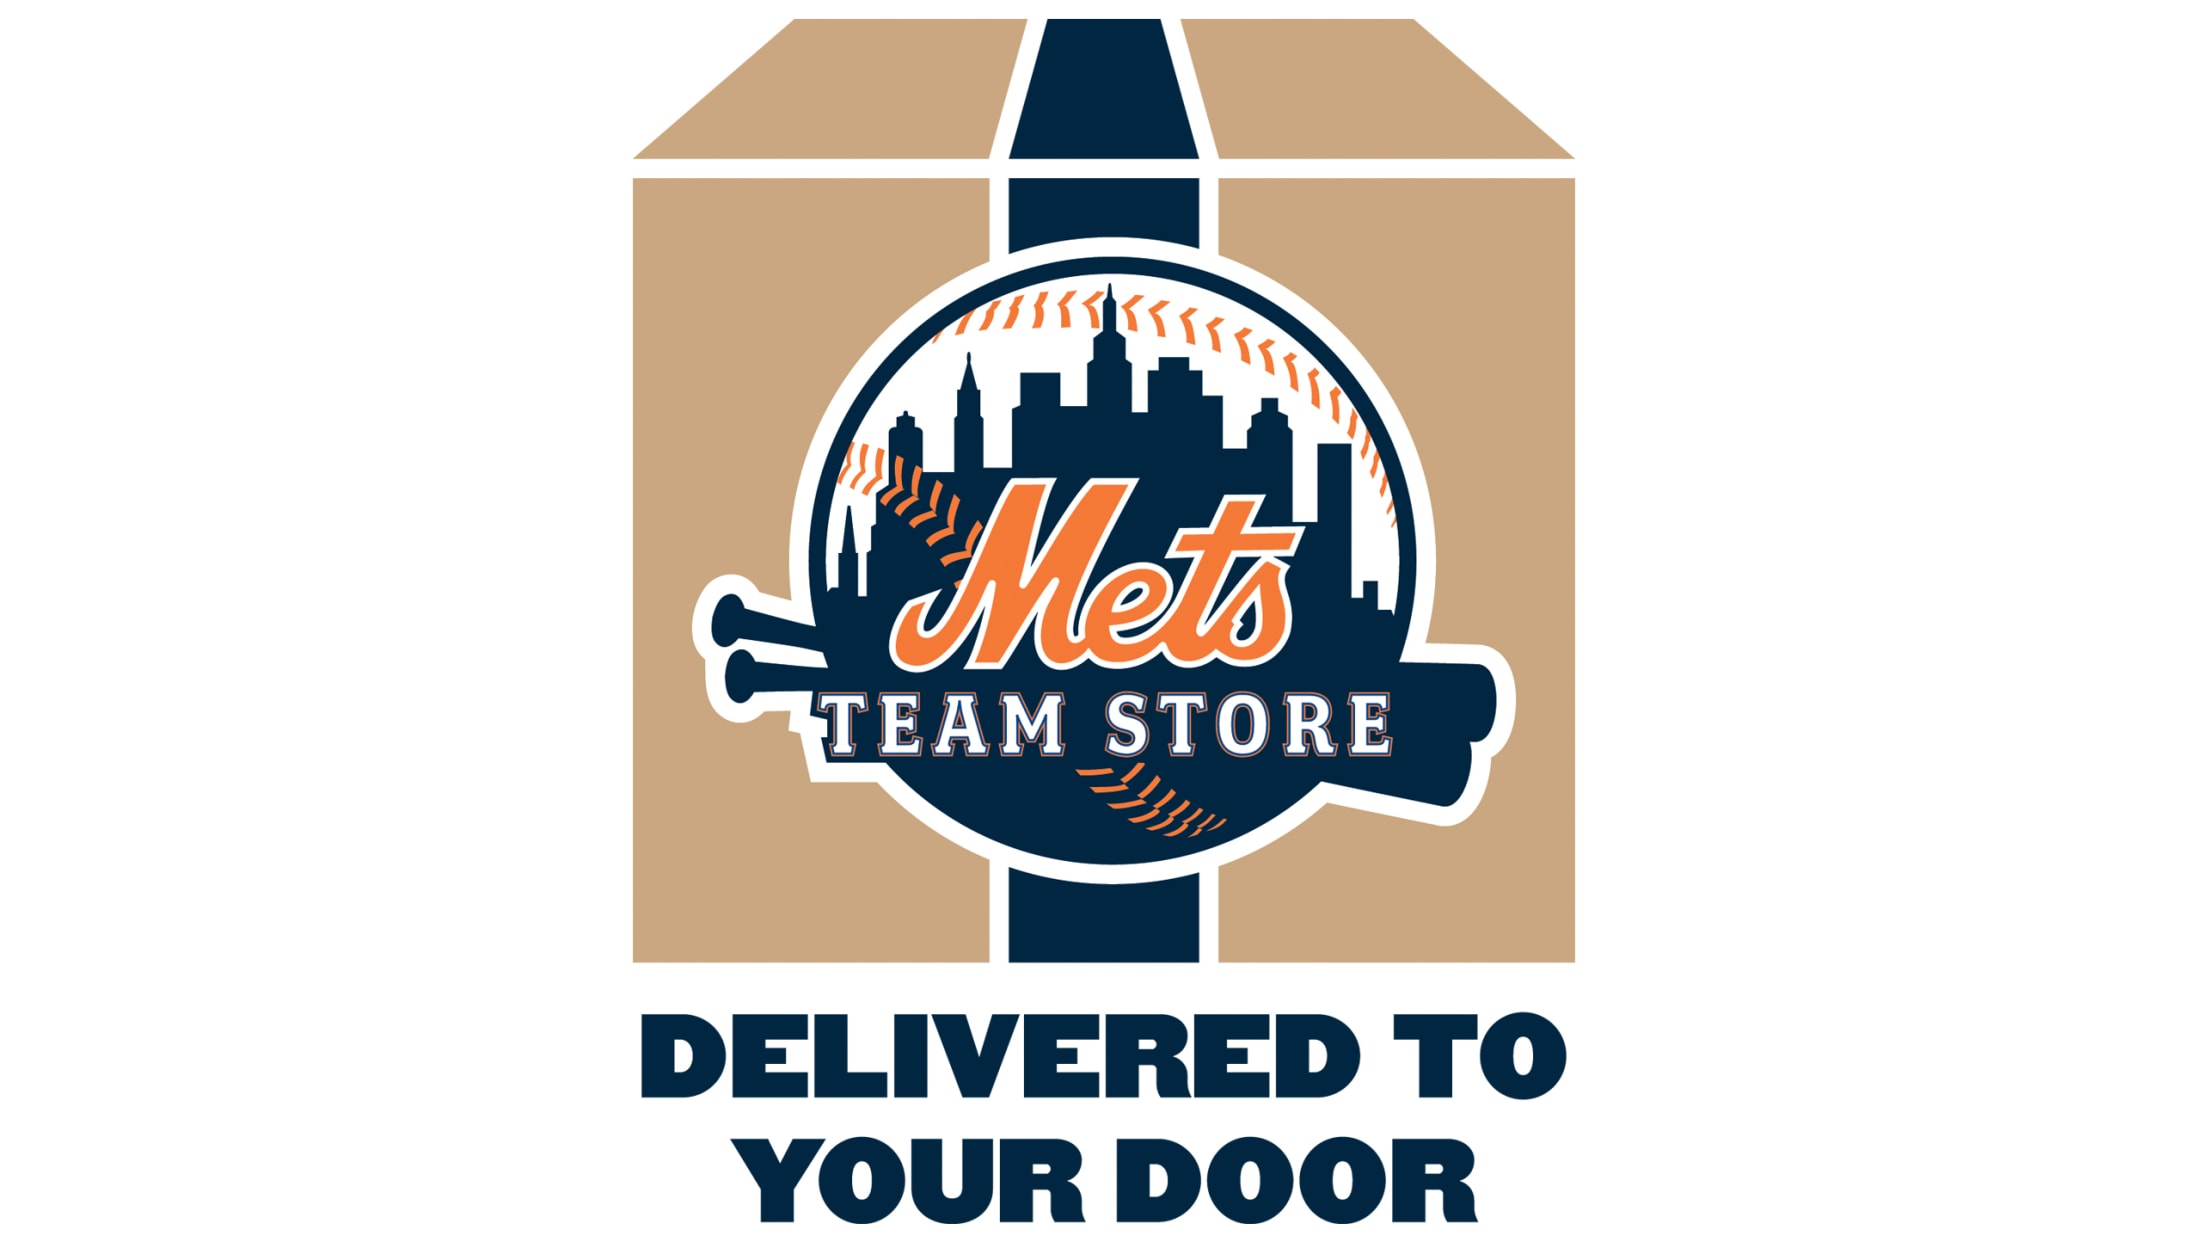 New York Mets Apparel, Mets Gear, Merchandise